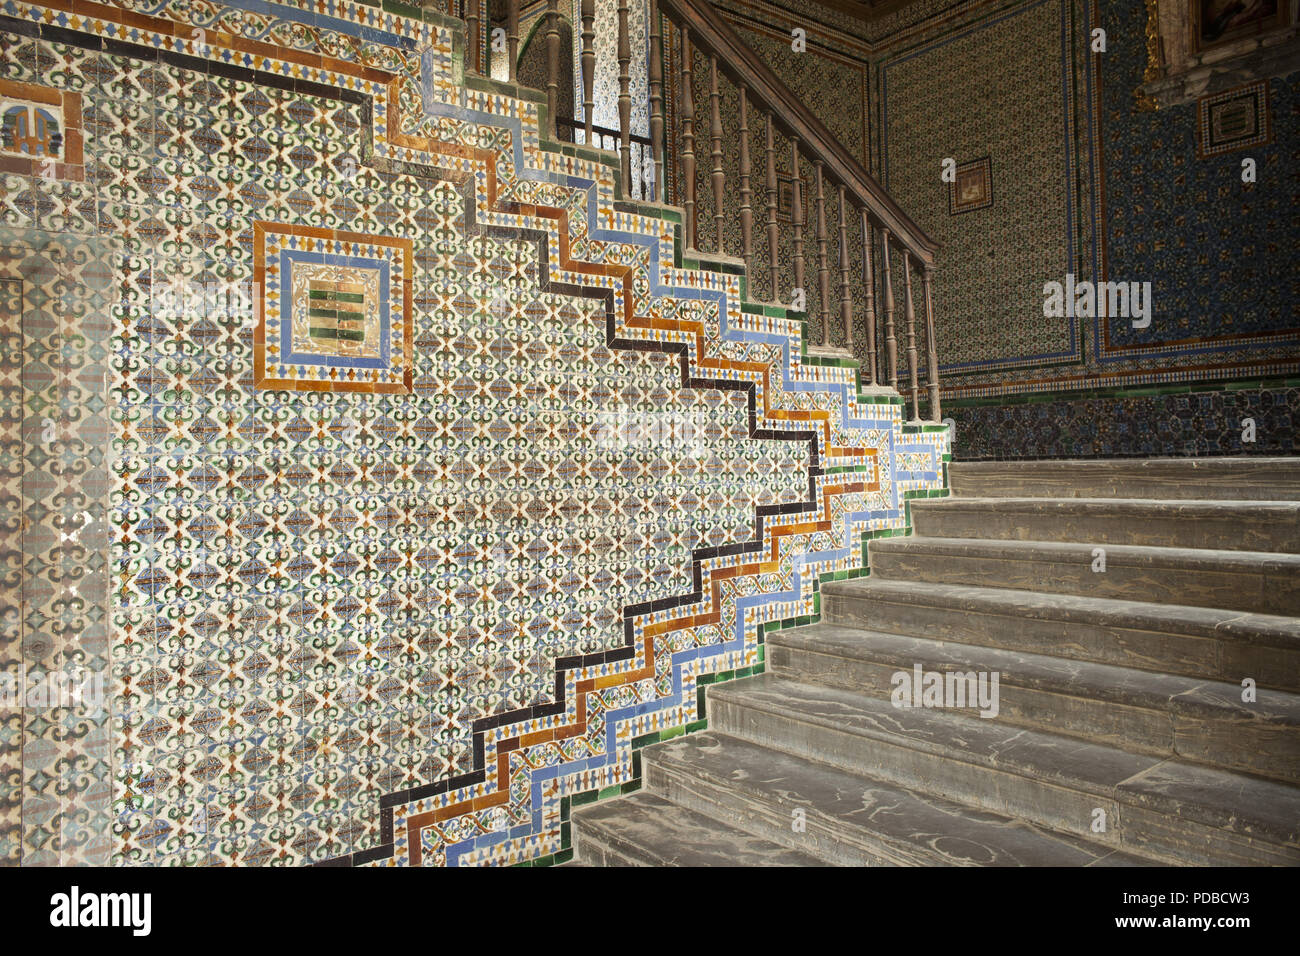 Real Alcazar, die königliche Residenz aus dem 14. Jh. Treppenaufgang mit maurischen Kacheln. Stockfoto